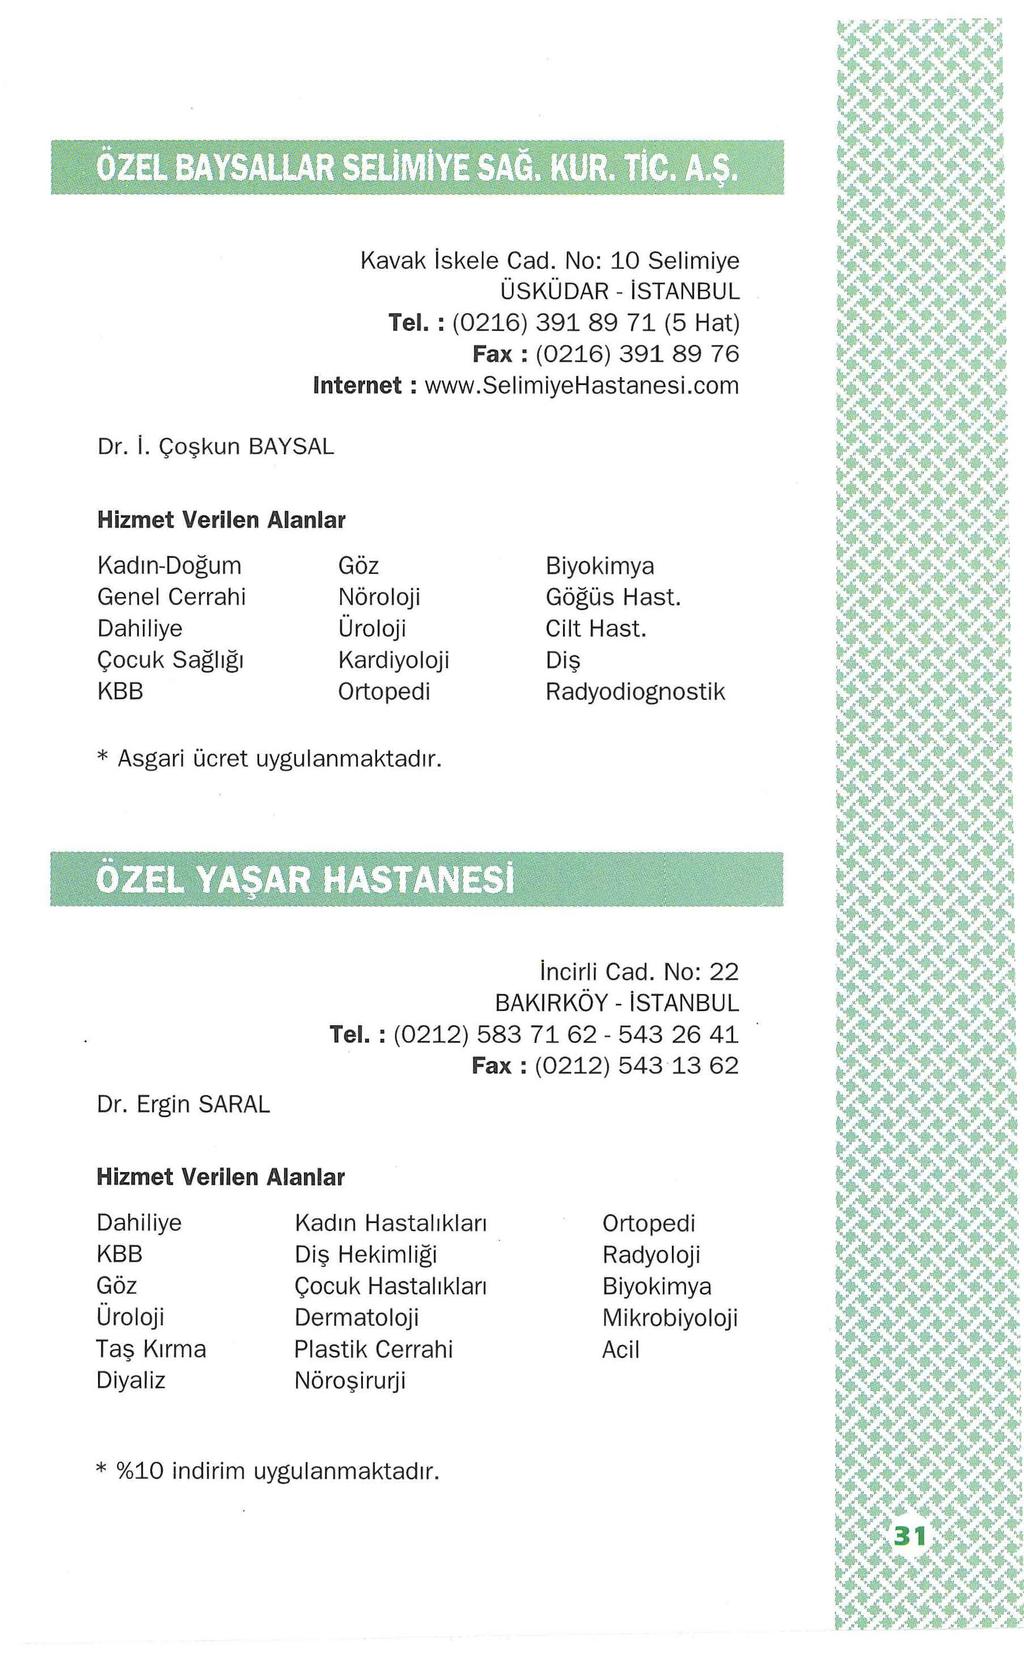 Dr. i. Çoşkun BAYSAL Kavak iskele Cad. No: 10 Selimiye ÜSKÜDAR- istanbul Tel.: (0216) 391 89 71 (5 Hat) Fax : (0216) 391 89 76 Internet: www.selimiyehastanesi.